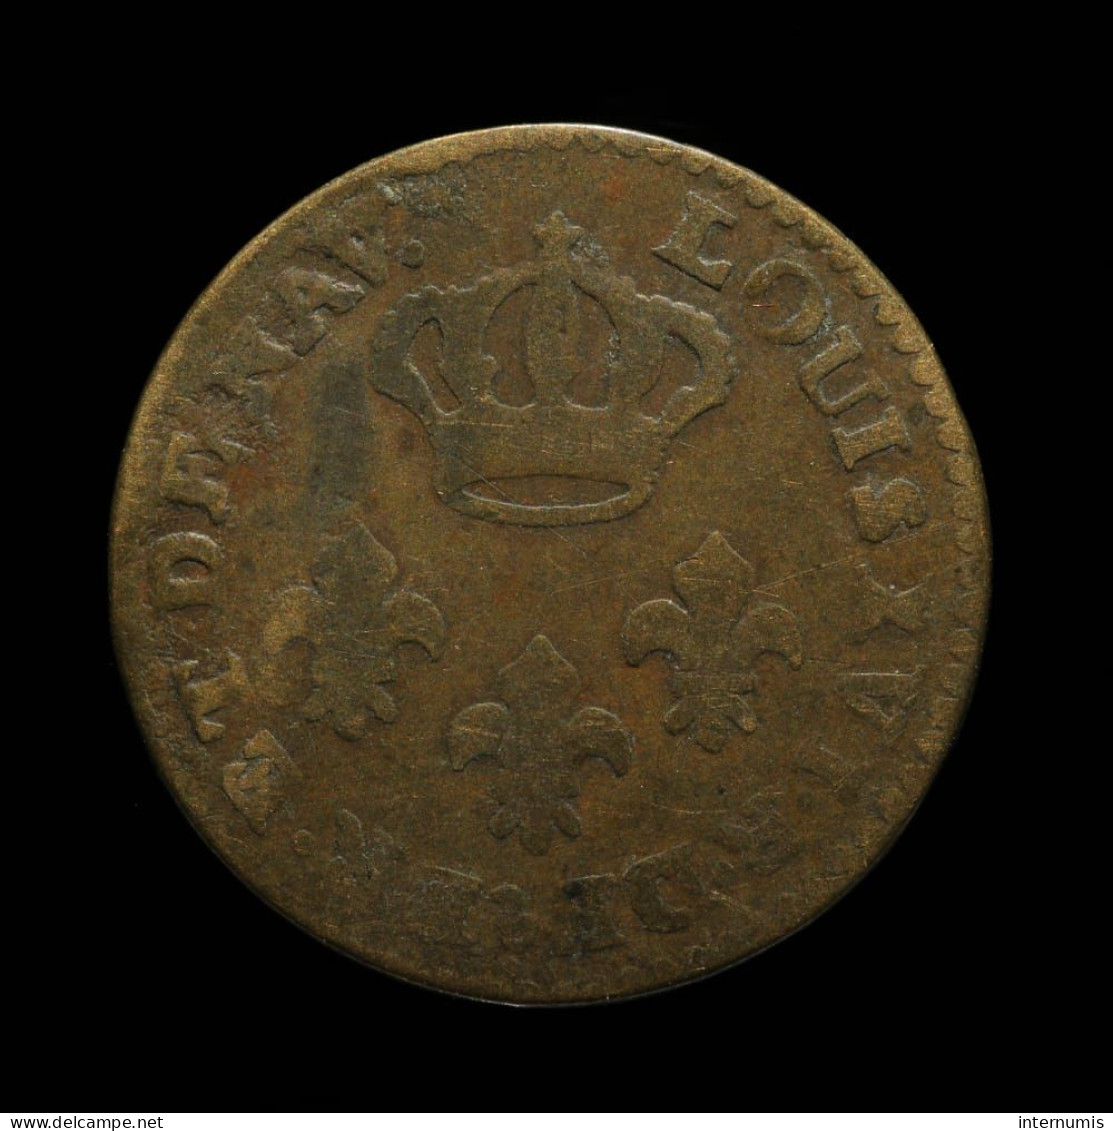 France, Cayenne (Guyane / French Guiana), 2 Sous, 1789, A - Paris, Billon, KM#1, Lec.20 - French Guiana